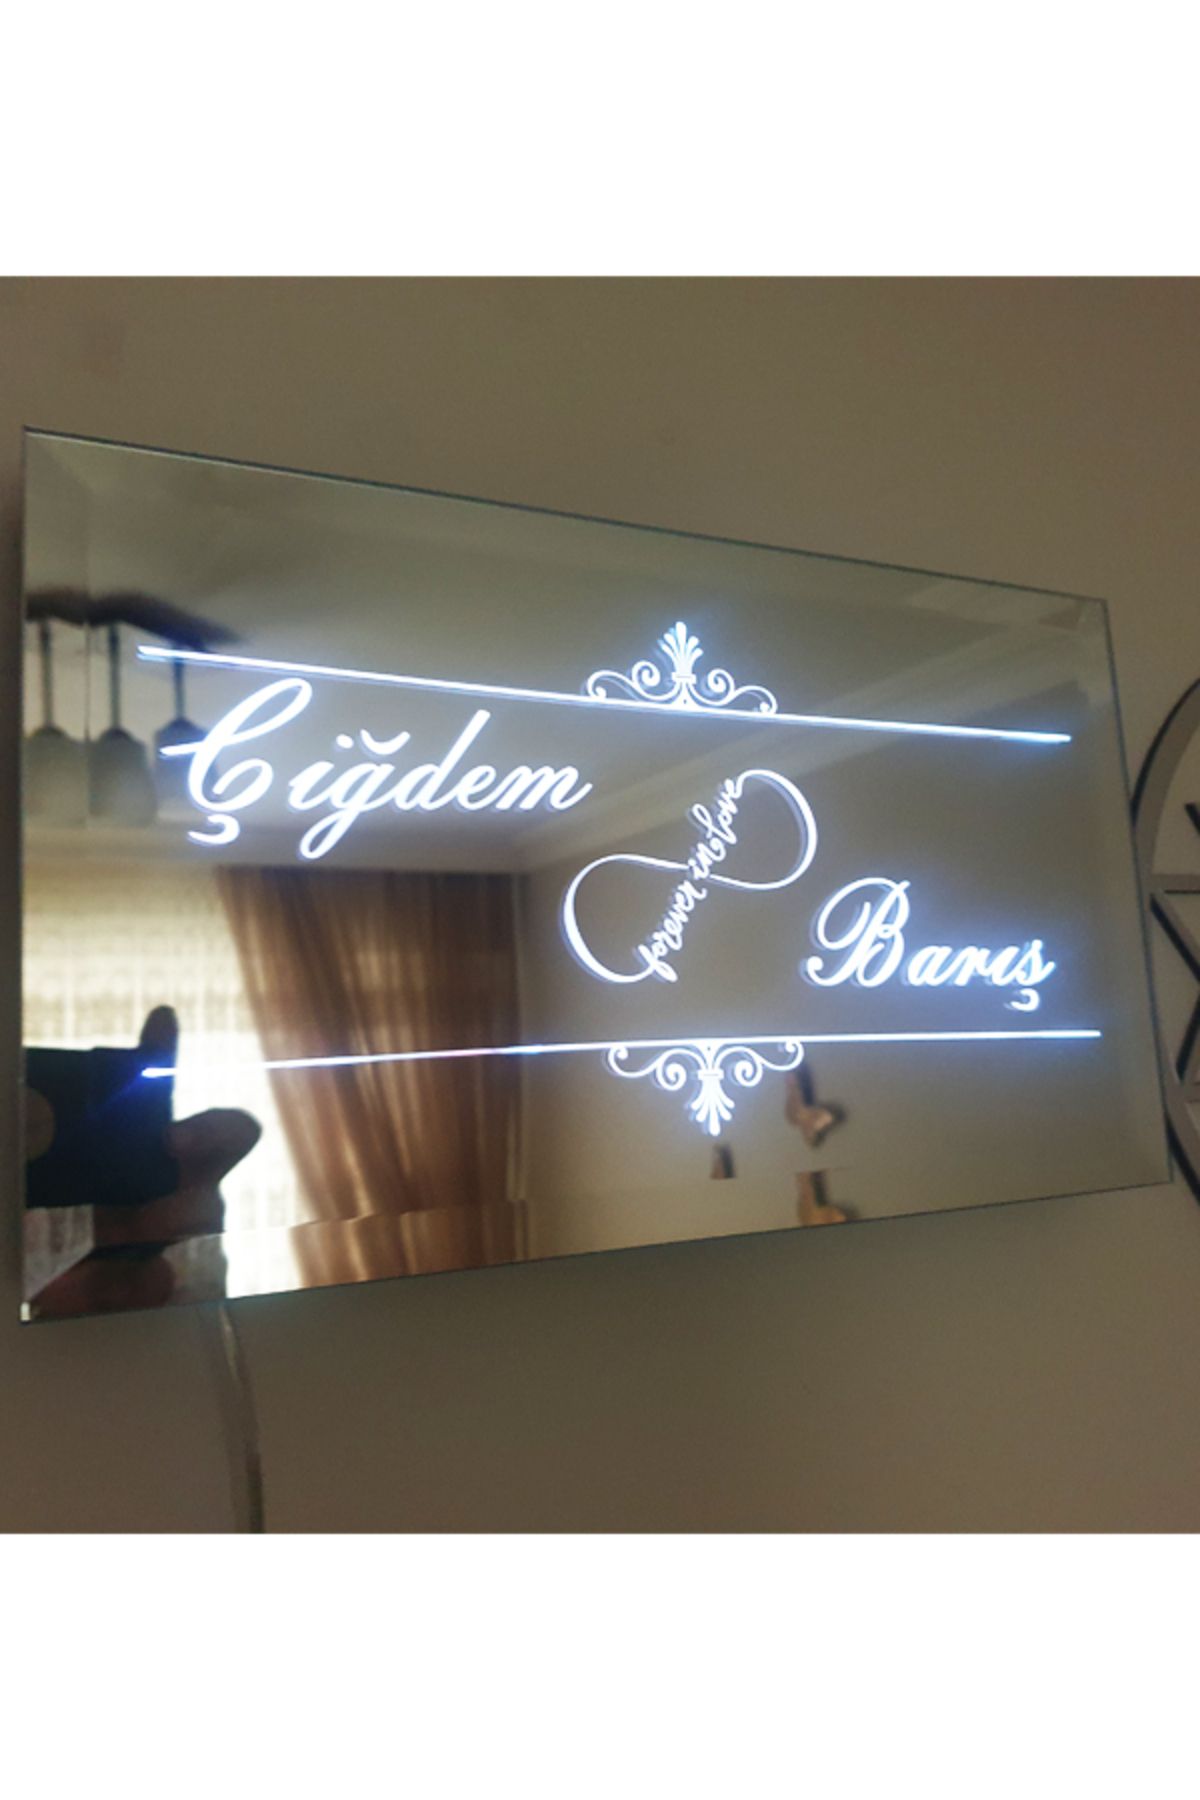 GİZEM SHOP Ledli Yazılı Ayna Kına,Nişan,Düğün,Dekorasyon Veya Gece Lambası olarak kullanabilirsiniz